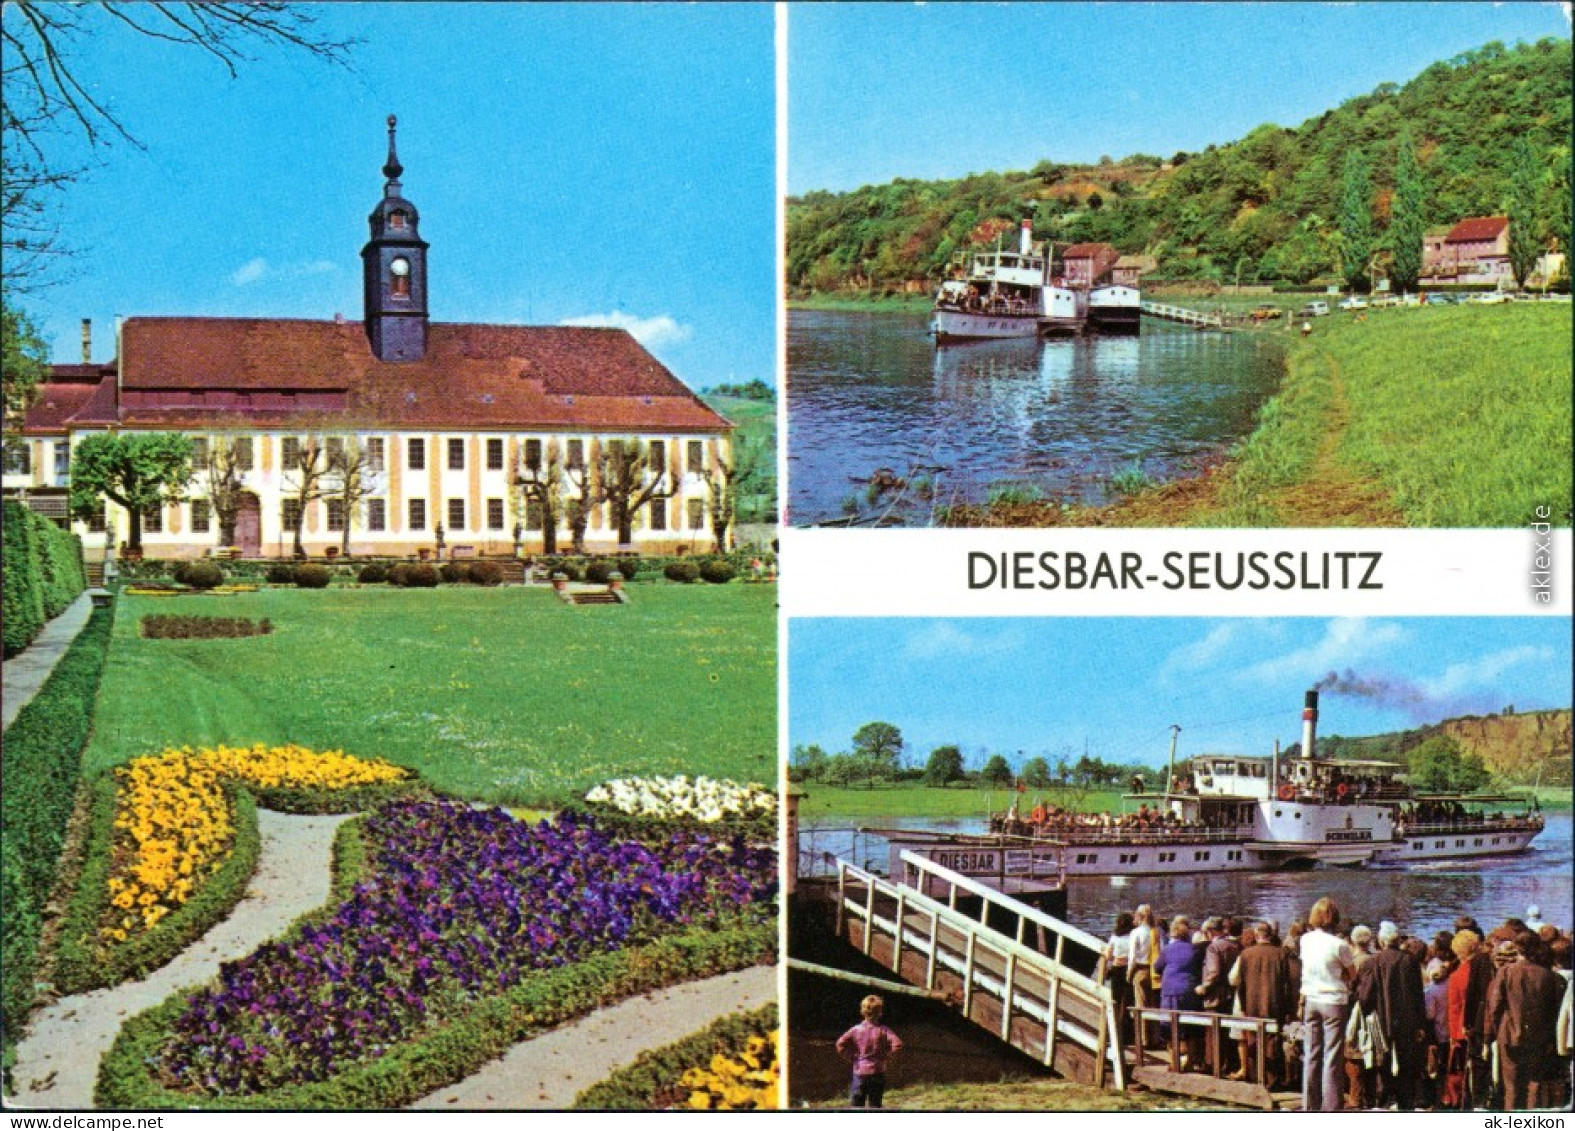 Diesbar (Elbe)-Nünchritz (Elbe) Rathaus, Fähre, Bootsanlegestelle 1980 - Diesbar-Seusslitz